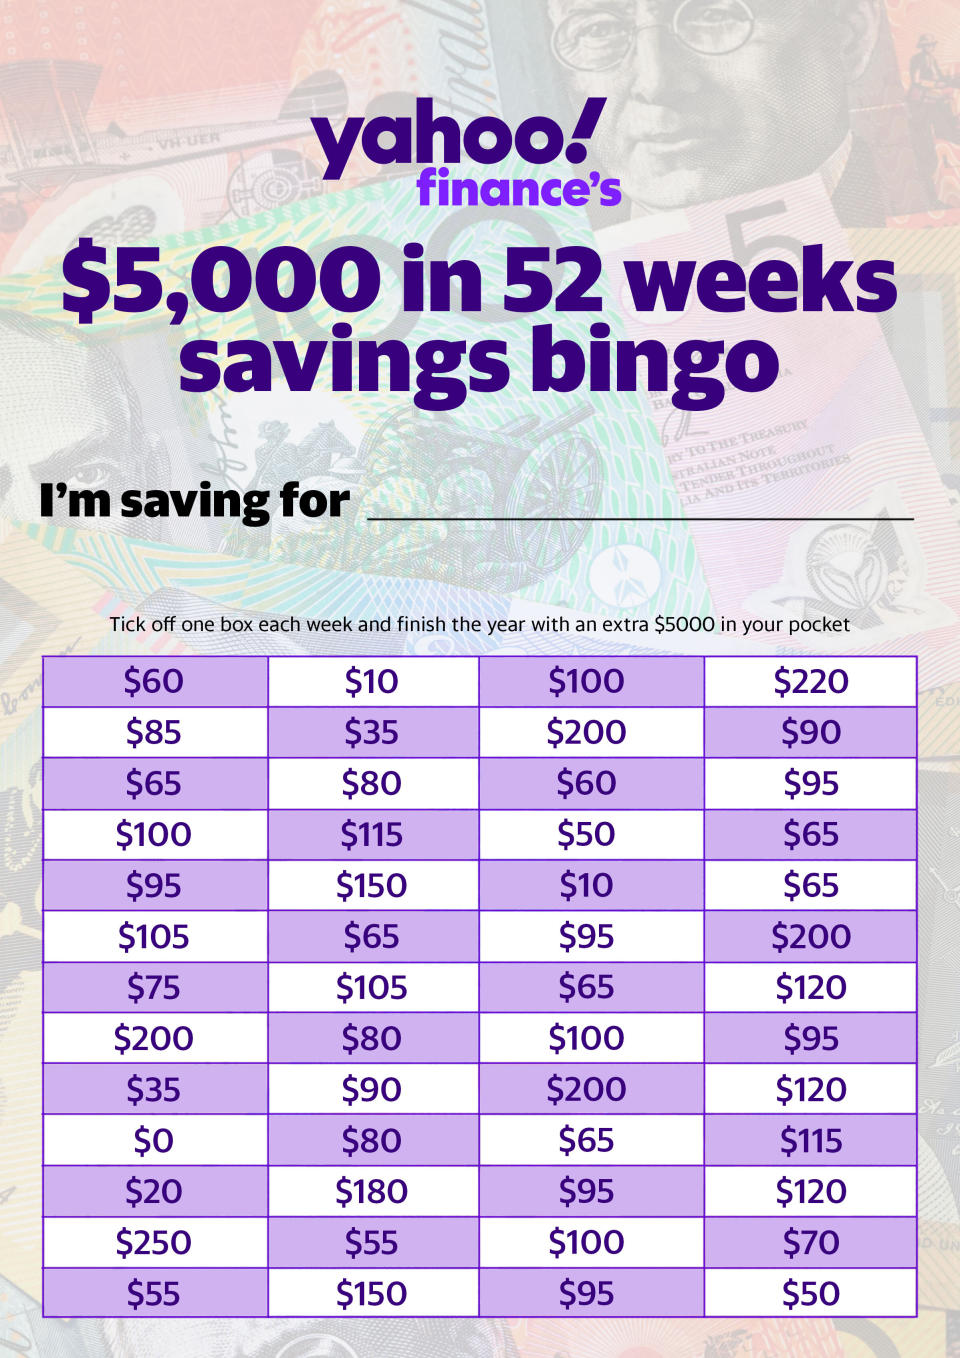 Yahoo Finance's $5k in 52 weeks savings challenge. Source: Supplied